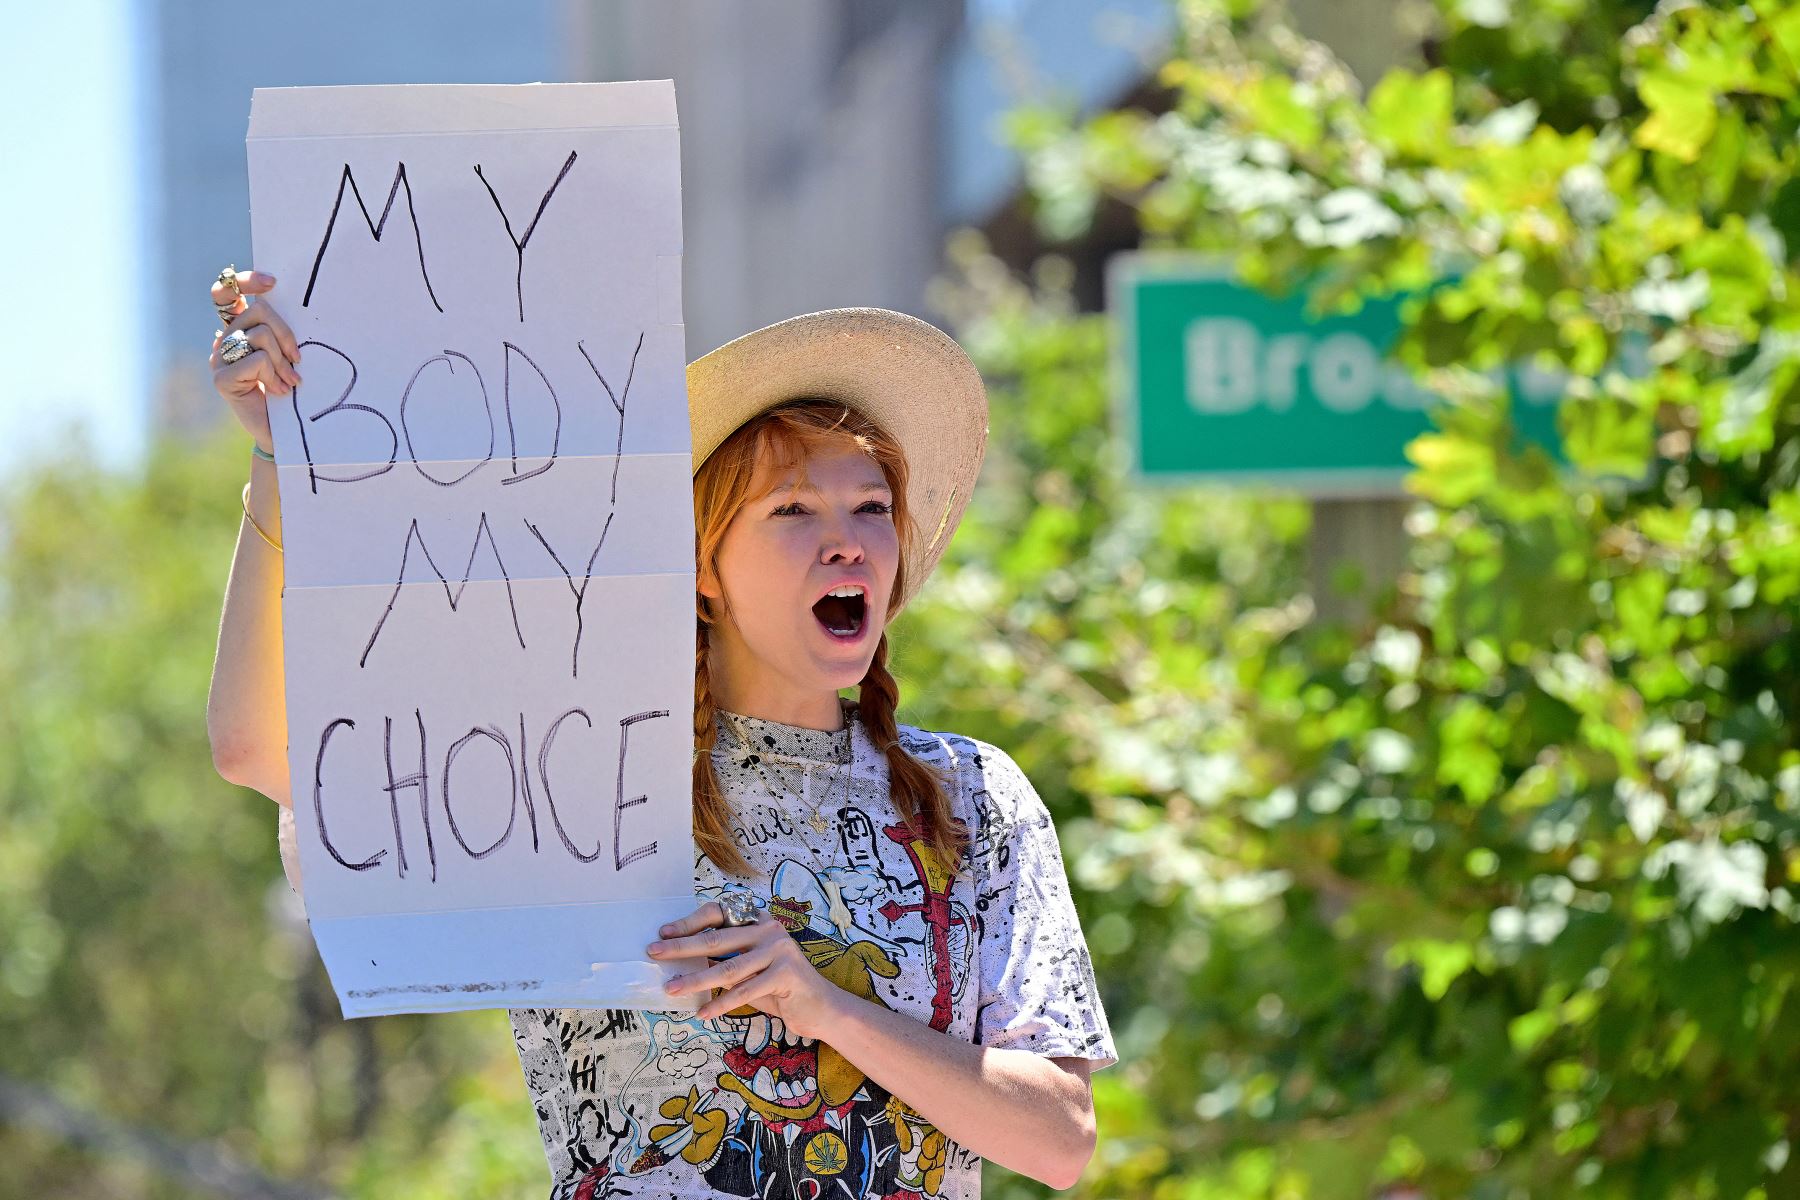 El fallo de la Corte Suprema penalizará aún más a las mujeres pobres o que crían solas a sus hijos, muchas de ellas de las minorías negra e hispana, subrayan los defensores del derecho al aborto. Foto: AFP